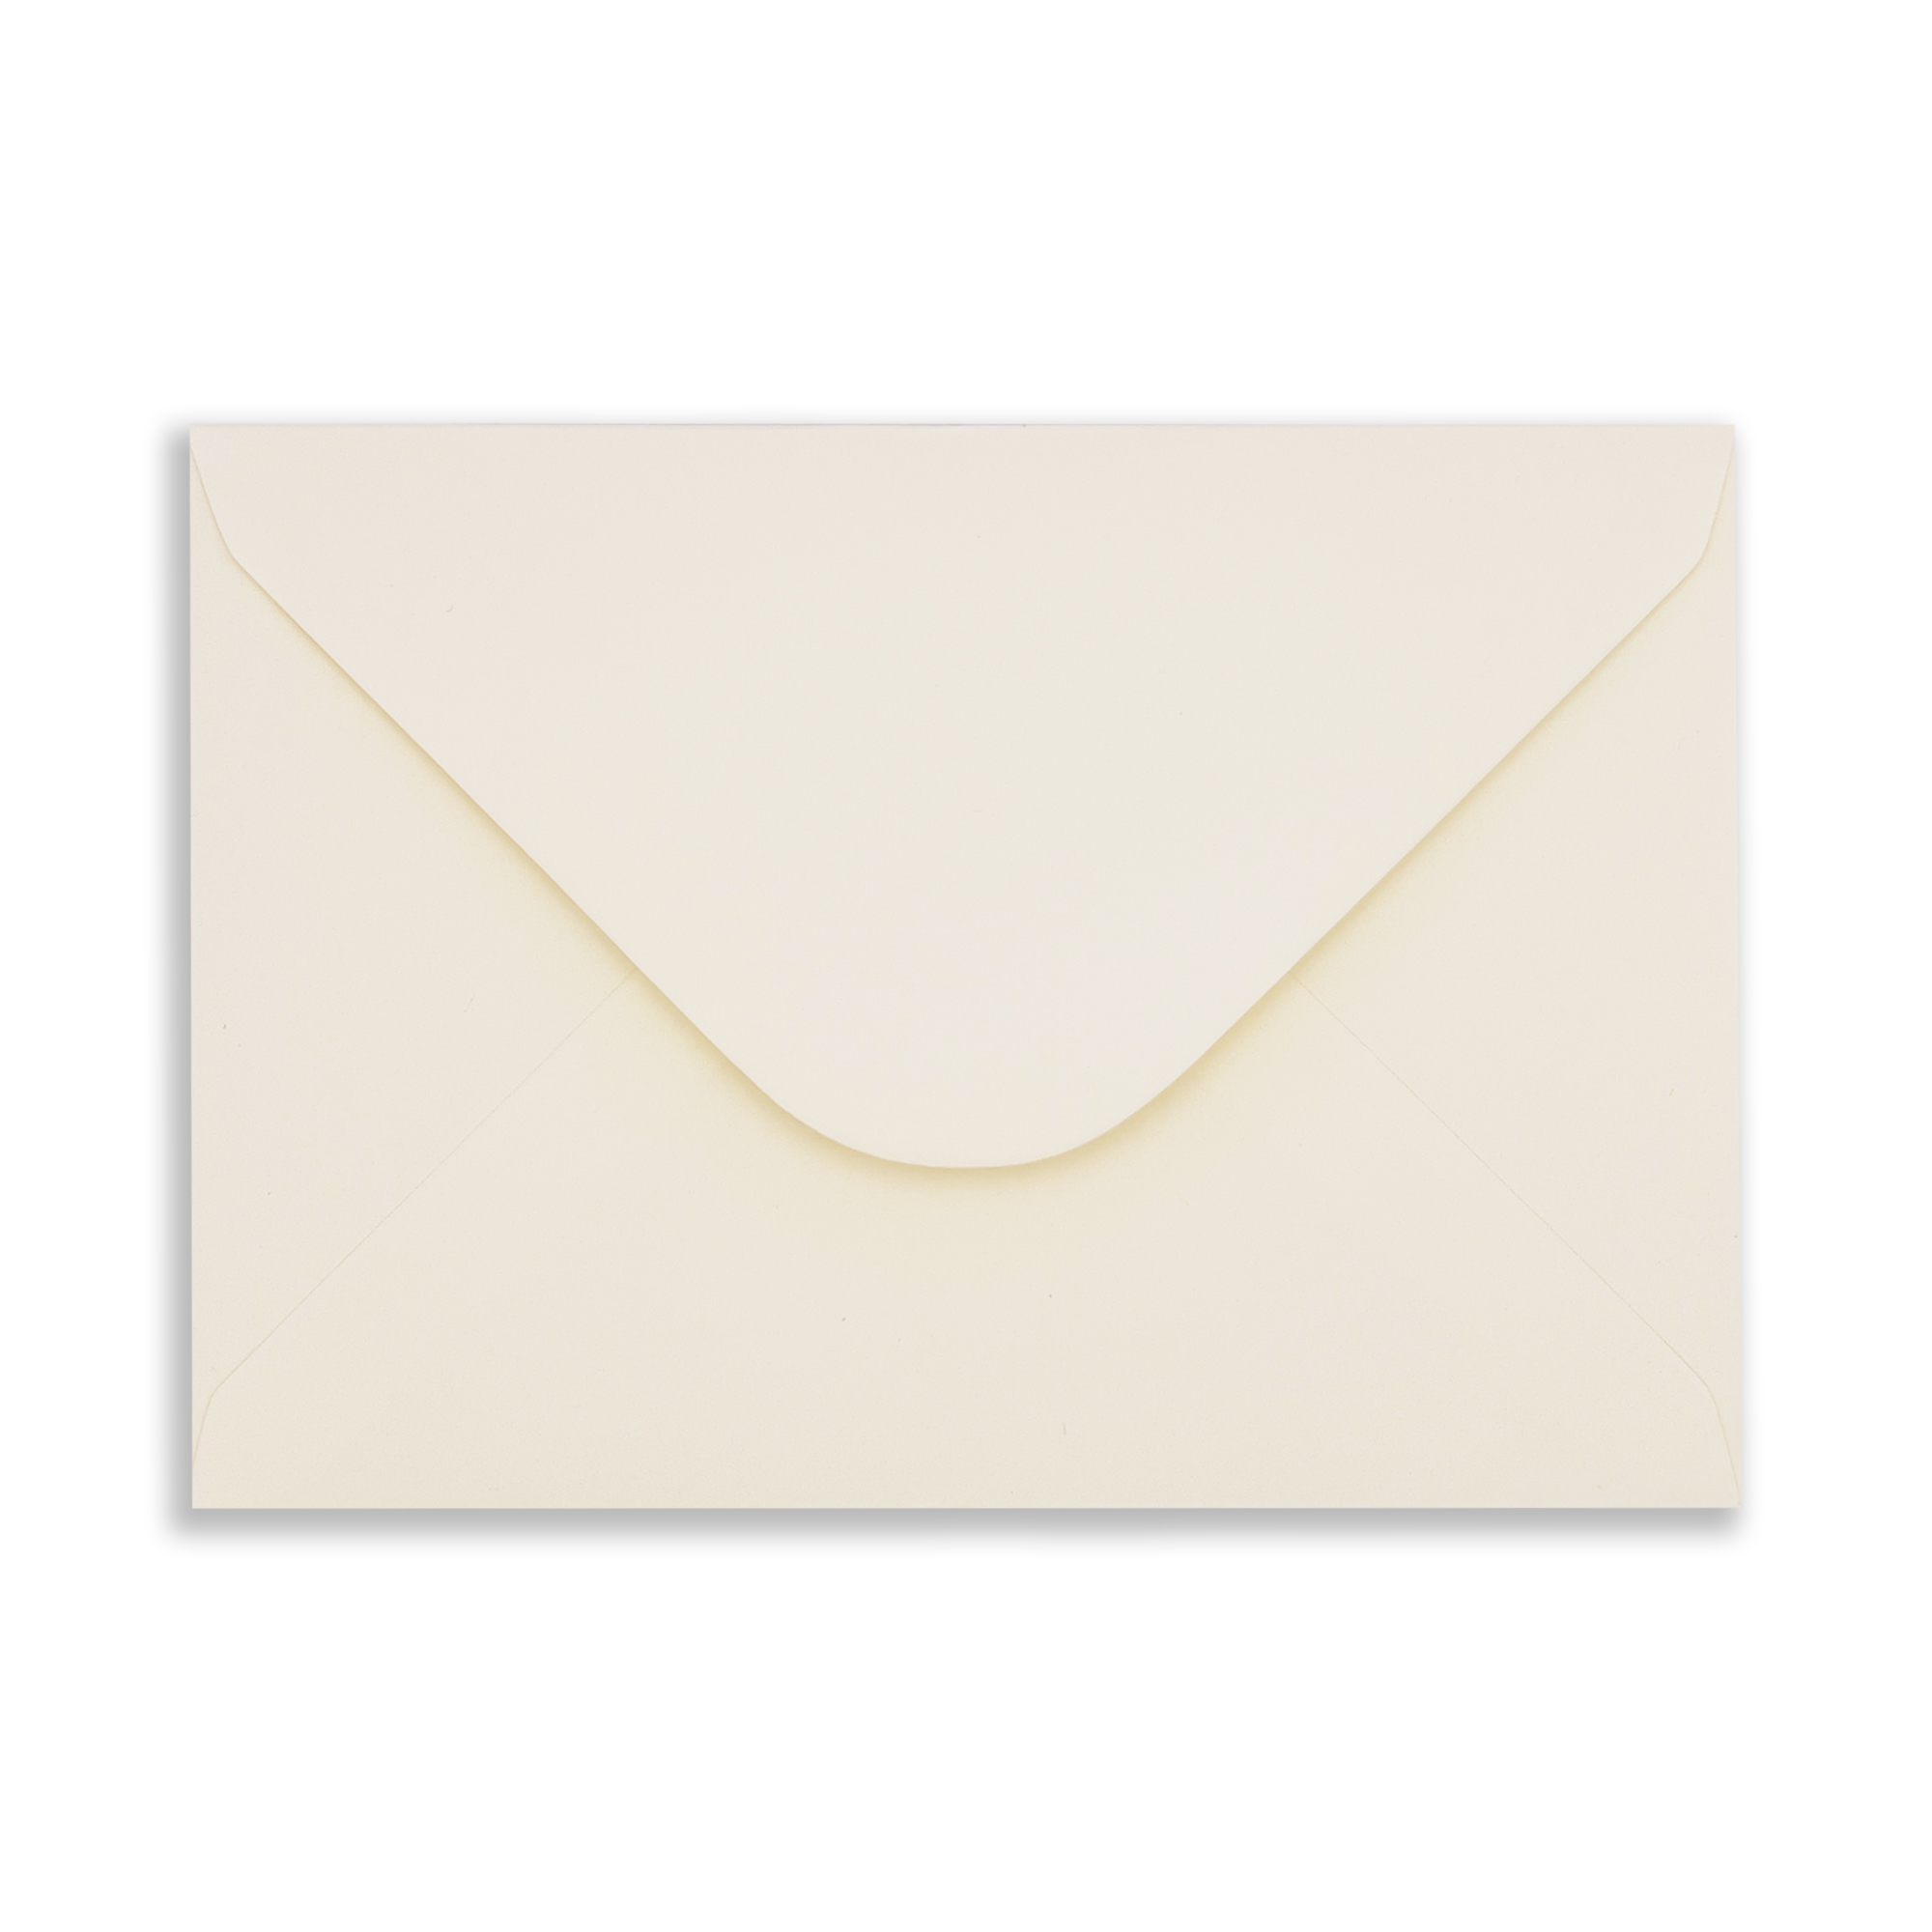 c6-cream-envelopes-flap